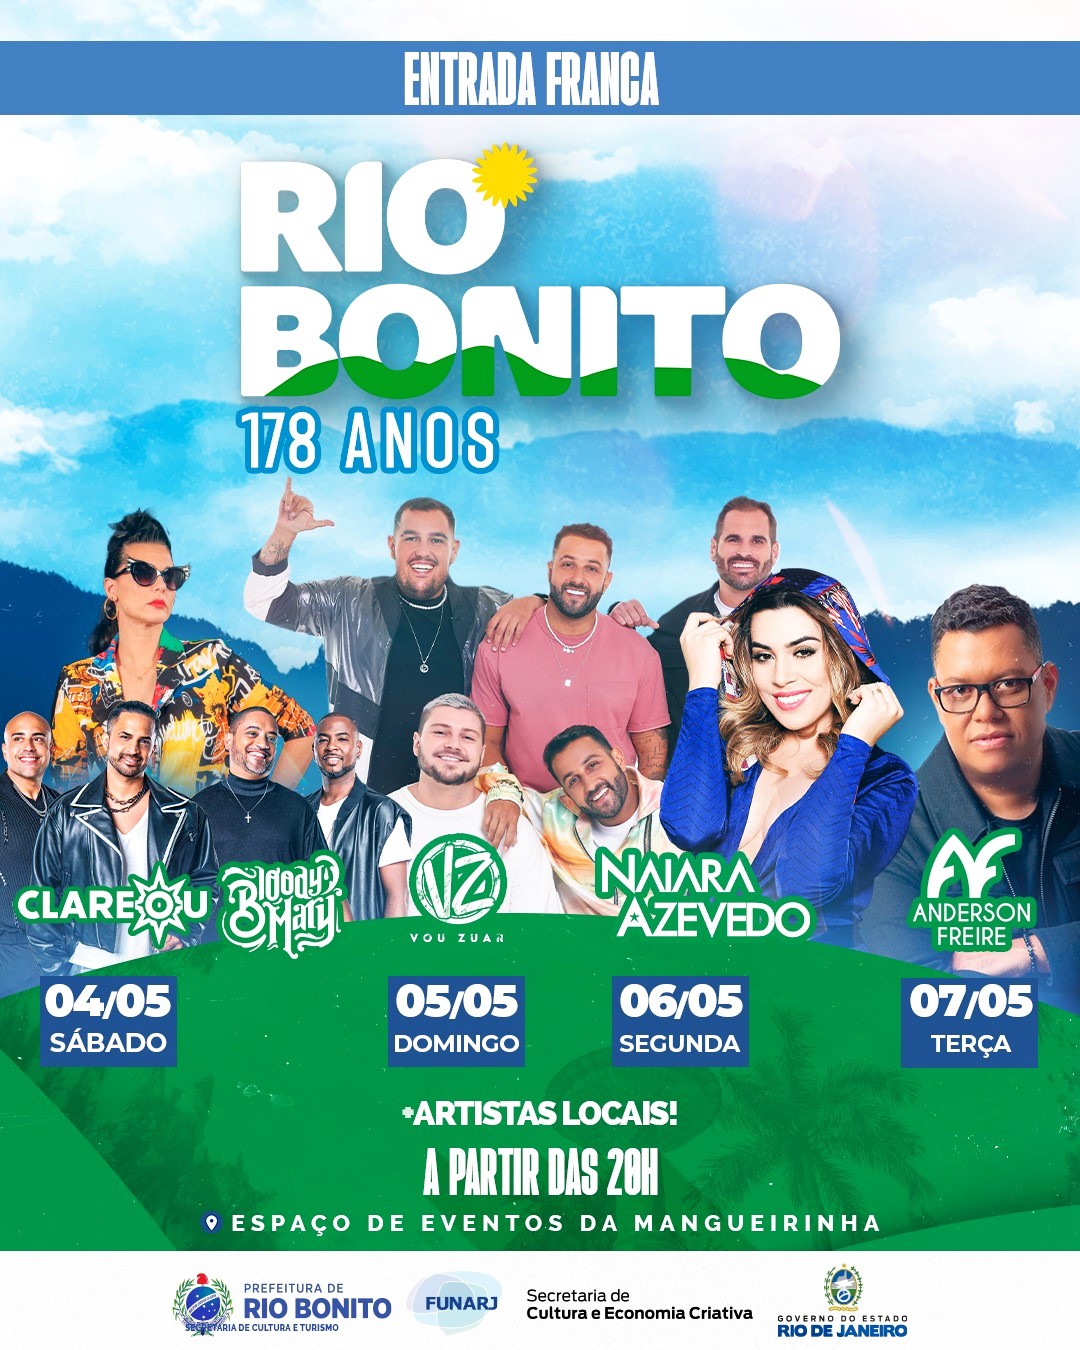 RIO-BONITO-178-ANOS-FLYER